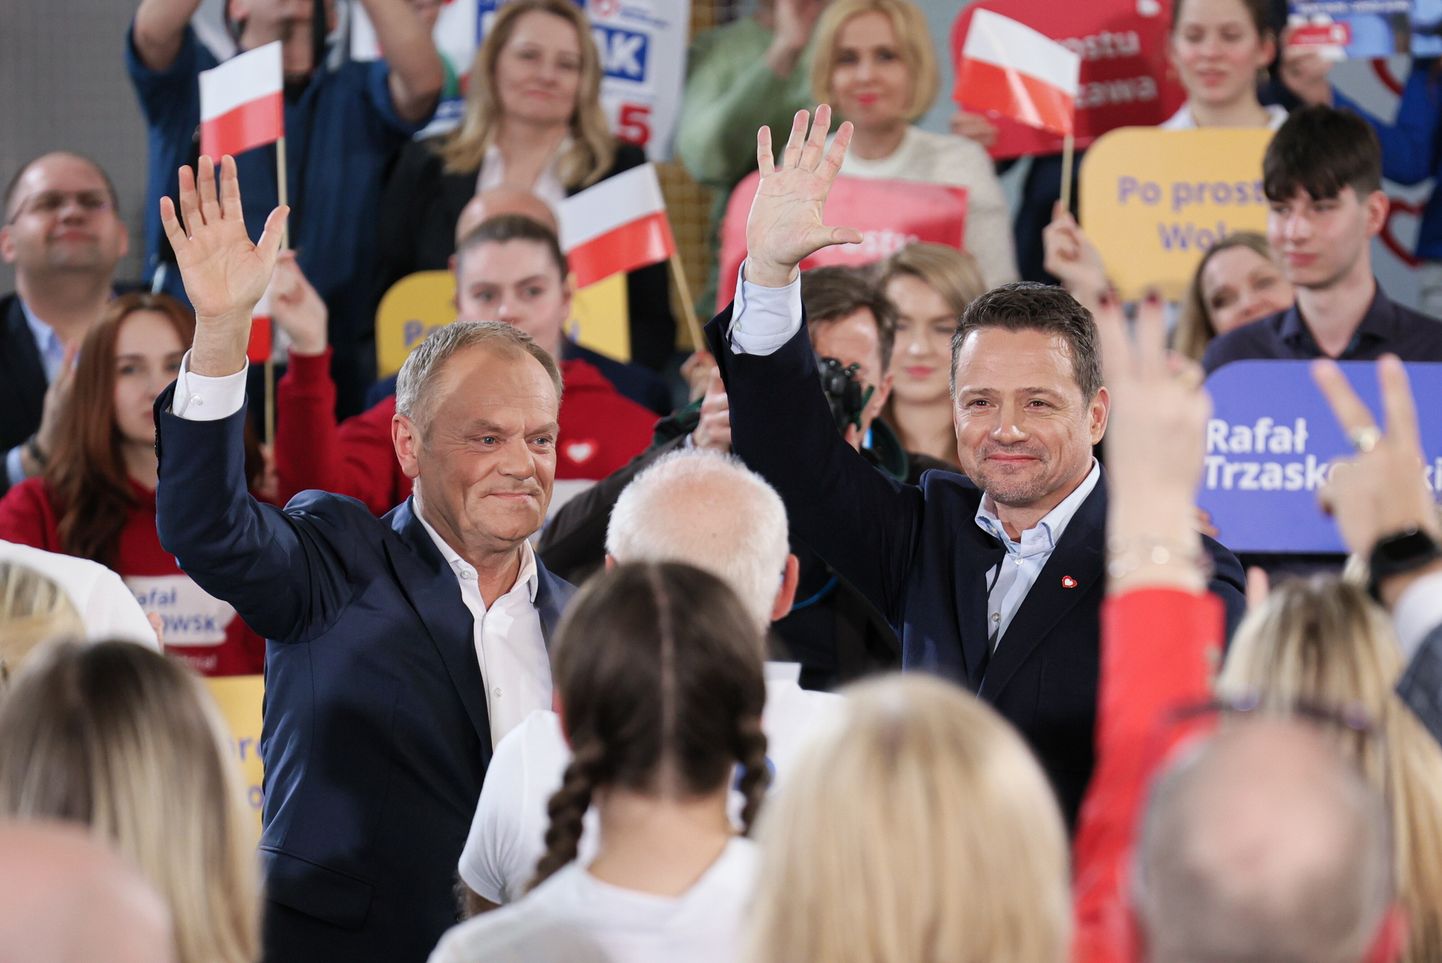 Polijas premjerministrs Donalds Tusks un Varšavas mērs Rafals Tšaskovskis.